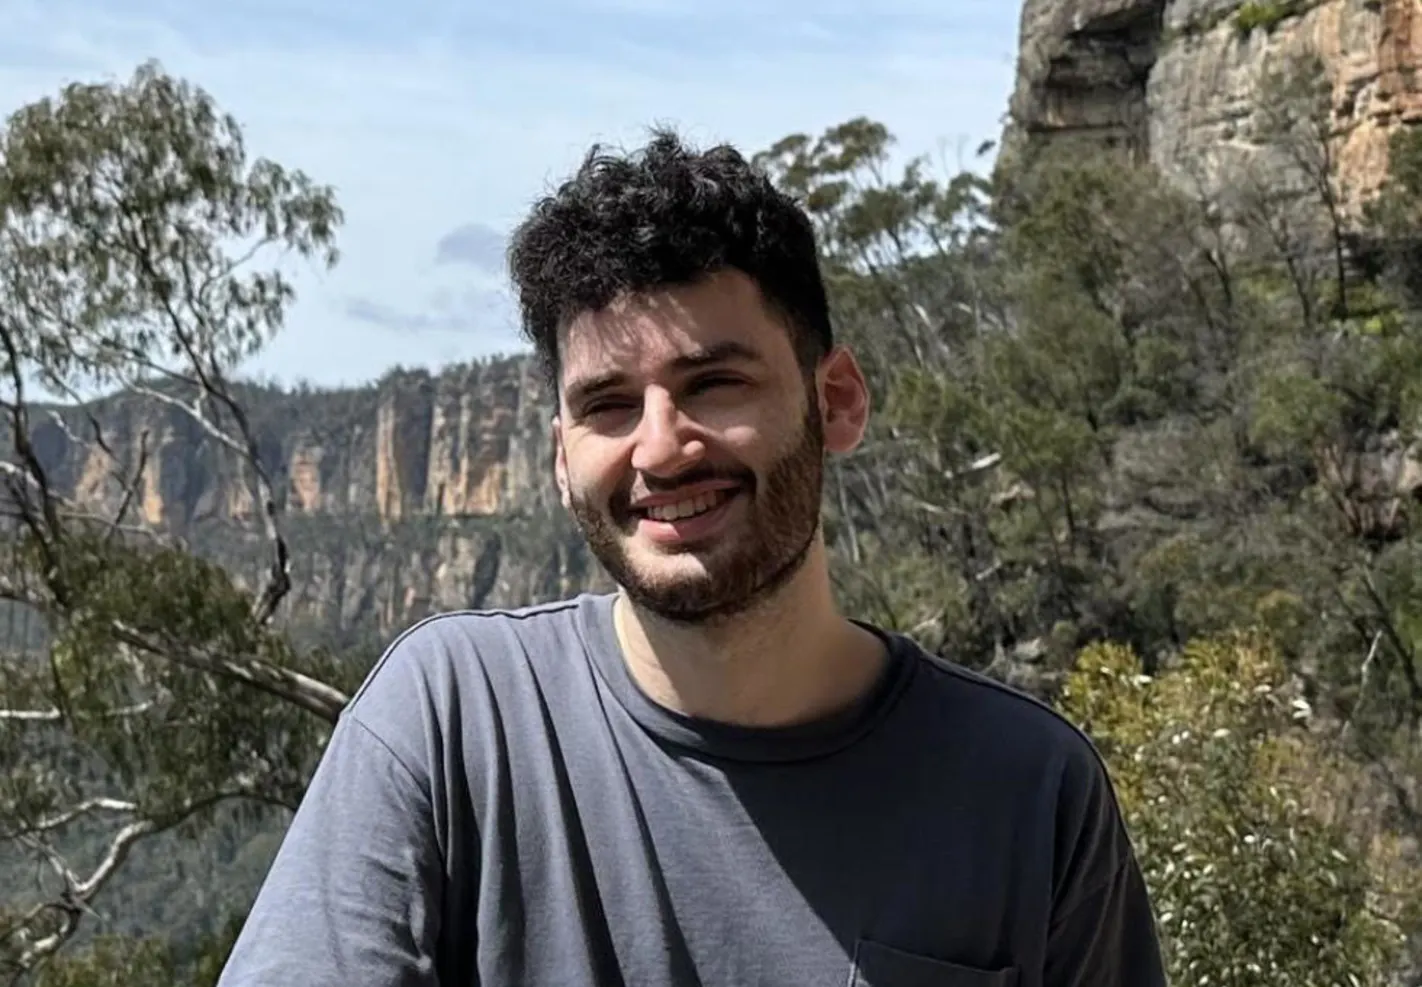 Sydney student mistakenly identified as Bondi Junction murderer settles with Seven